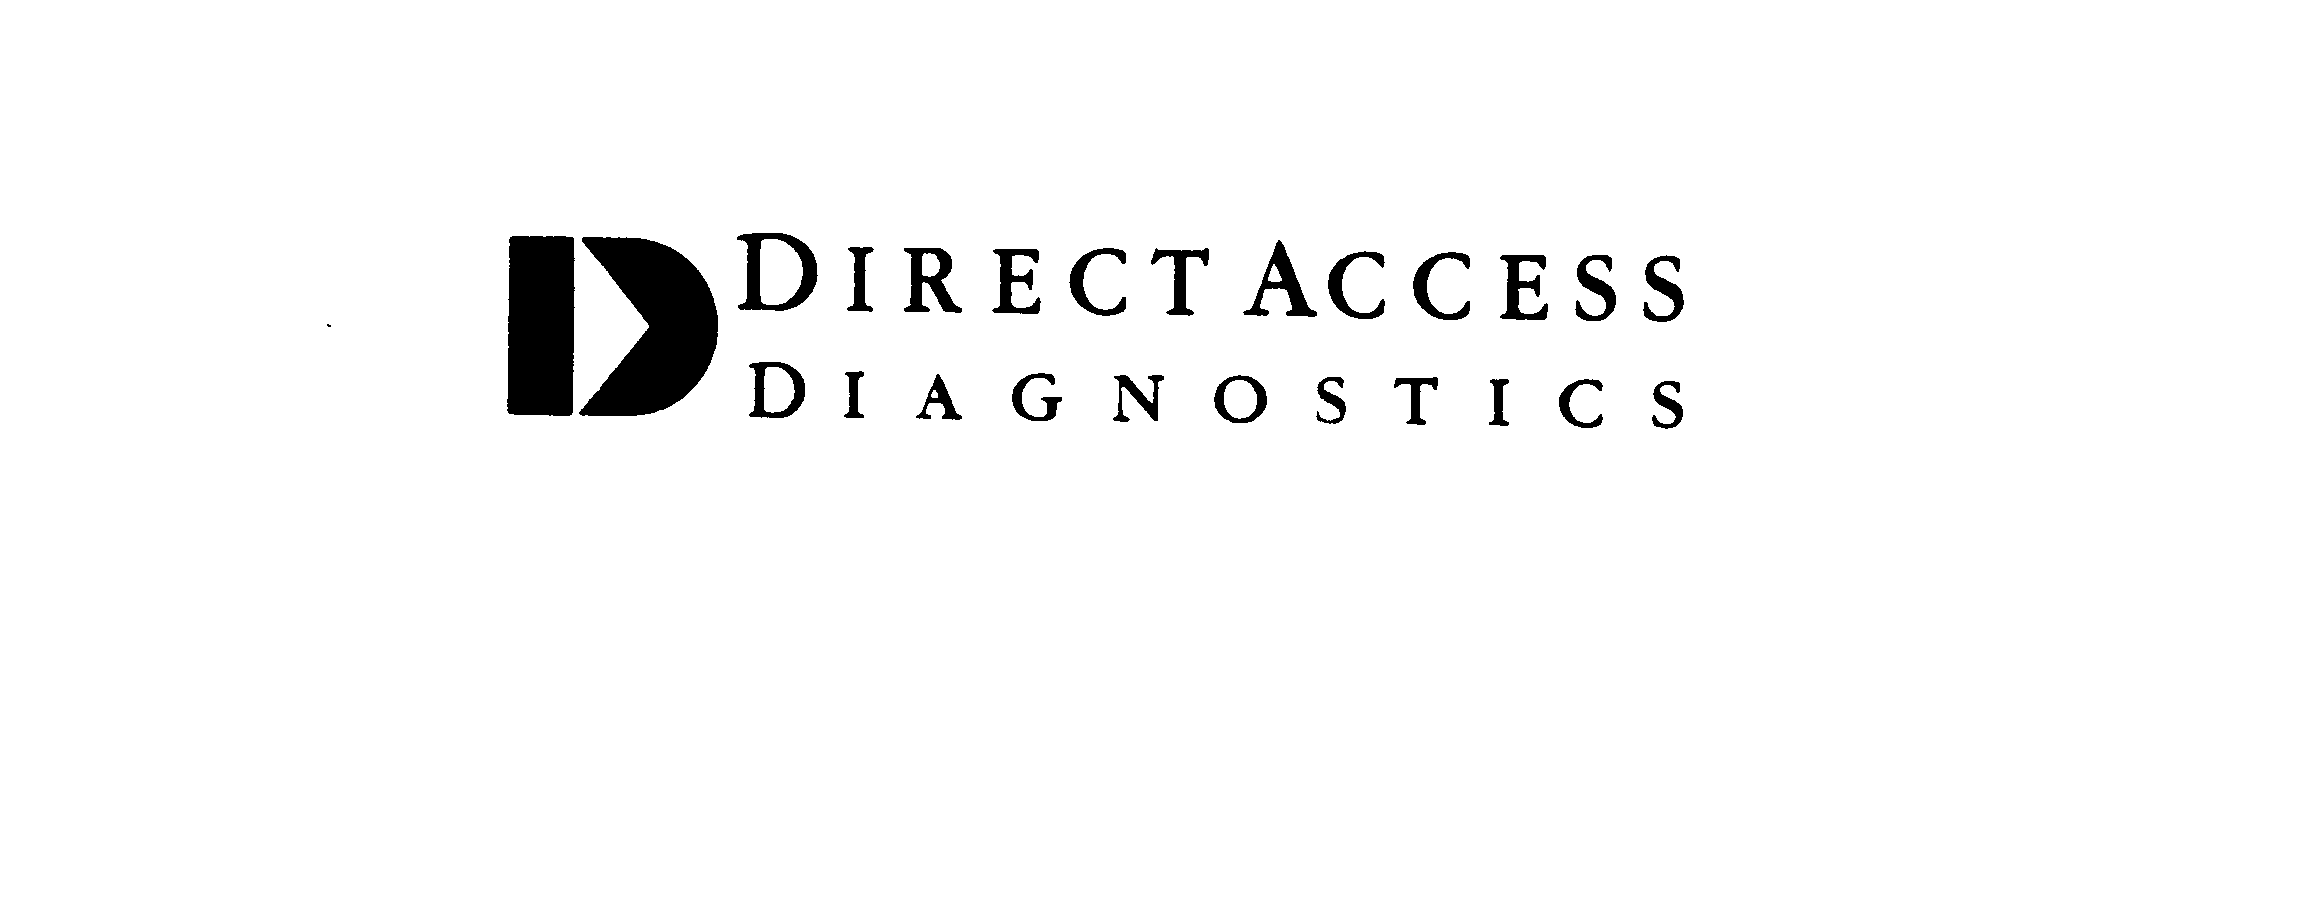 Trademark Logo D DIRECT ACCESS DIAGNOSTICS